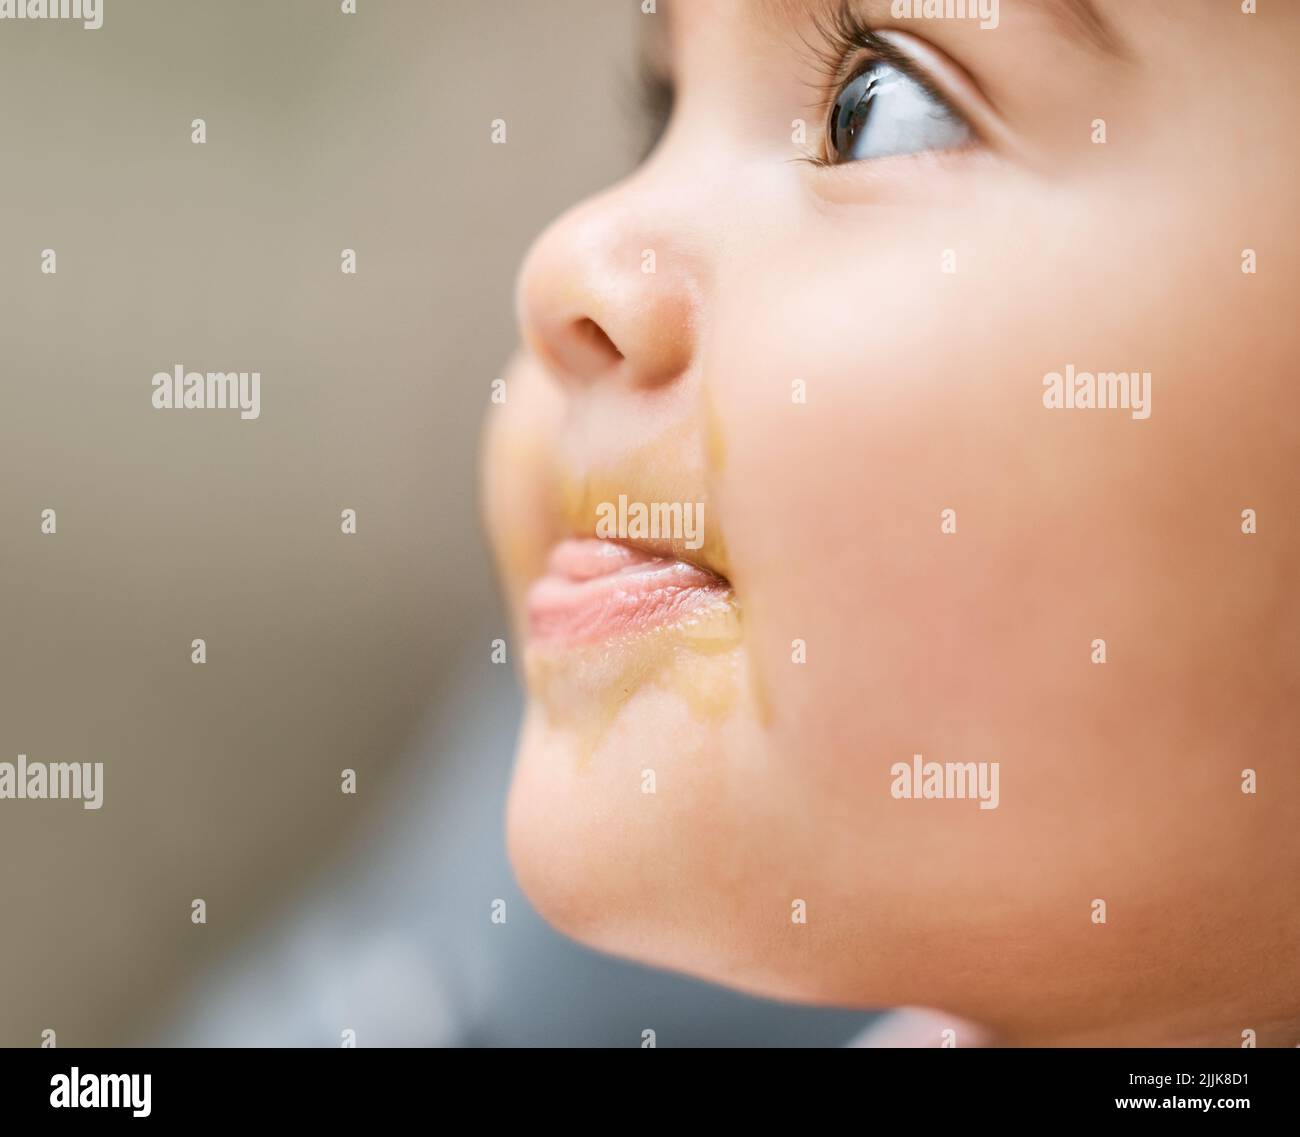 Es ist mein erstes Mal, etwas so leckeres zu versuchen. Ein entzückendes Baby Mädchen Mund mit Babynahrung bedeckt. Stockfoto